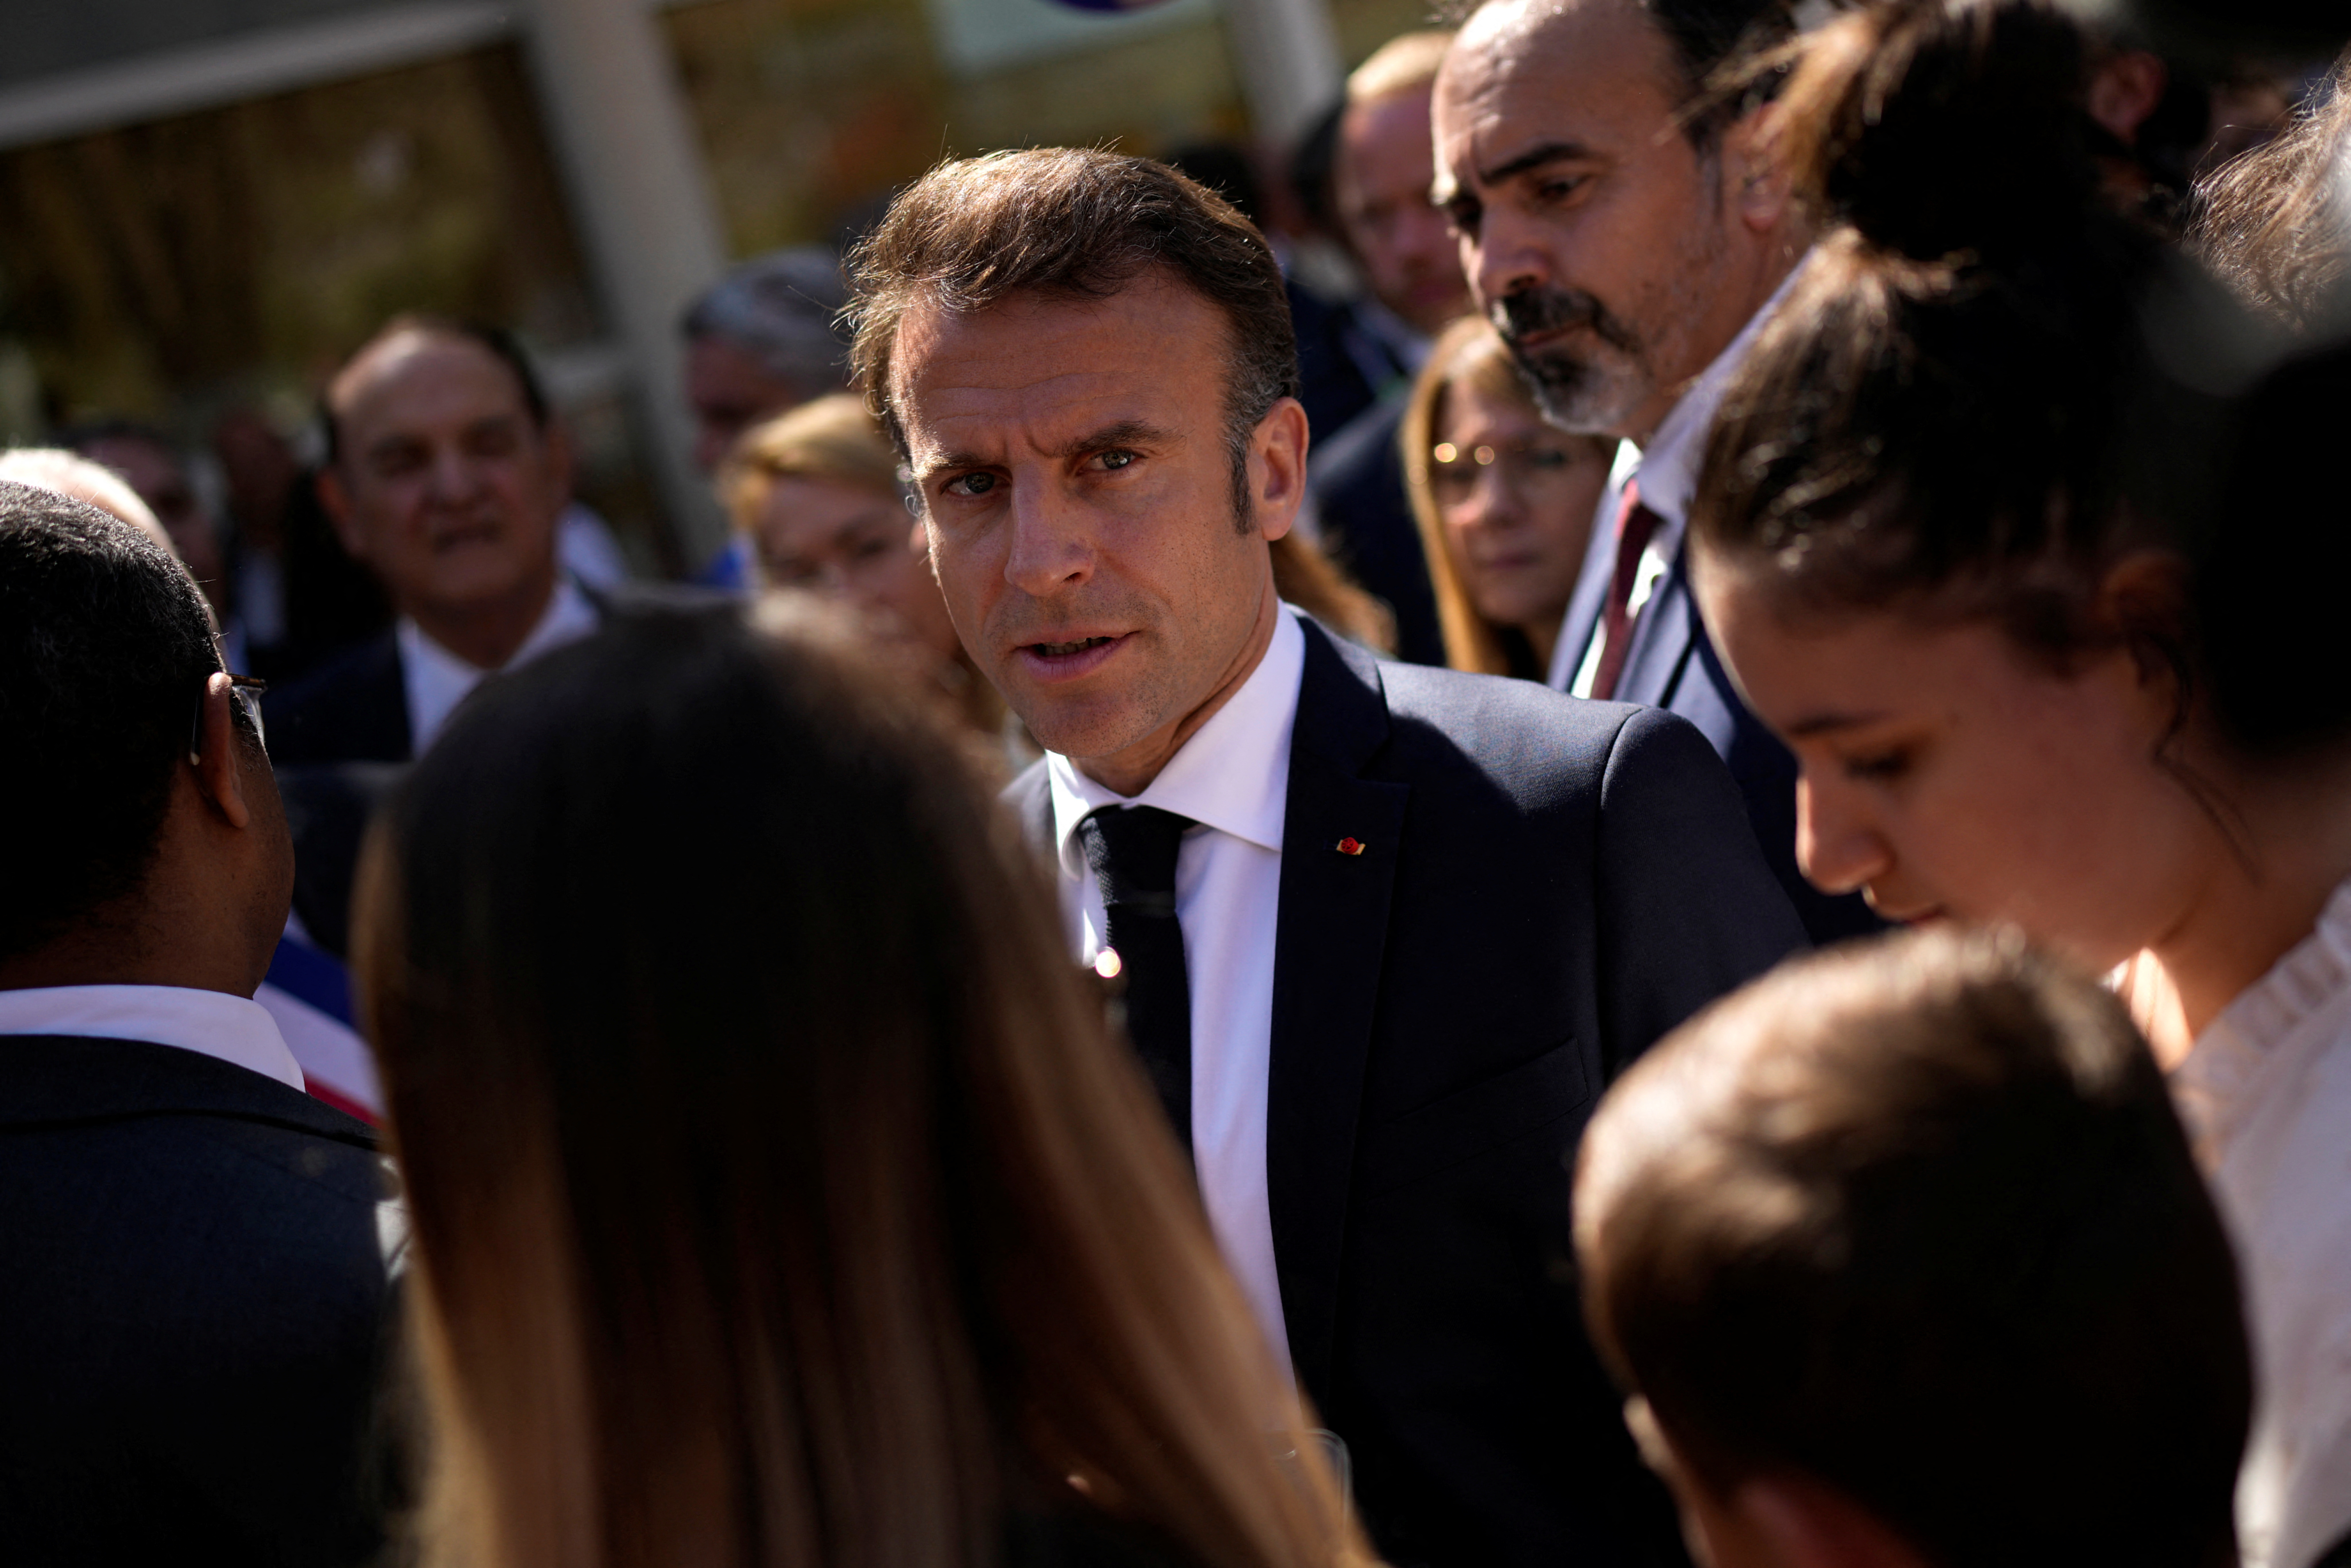 La policía francesa confiscó cacerolas para evitar protestas ruidosas durante una visita de Emmanuel Macron al sur del país